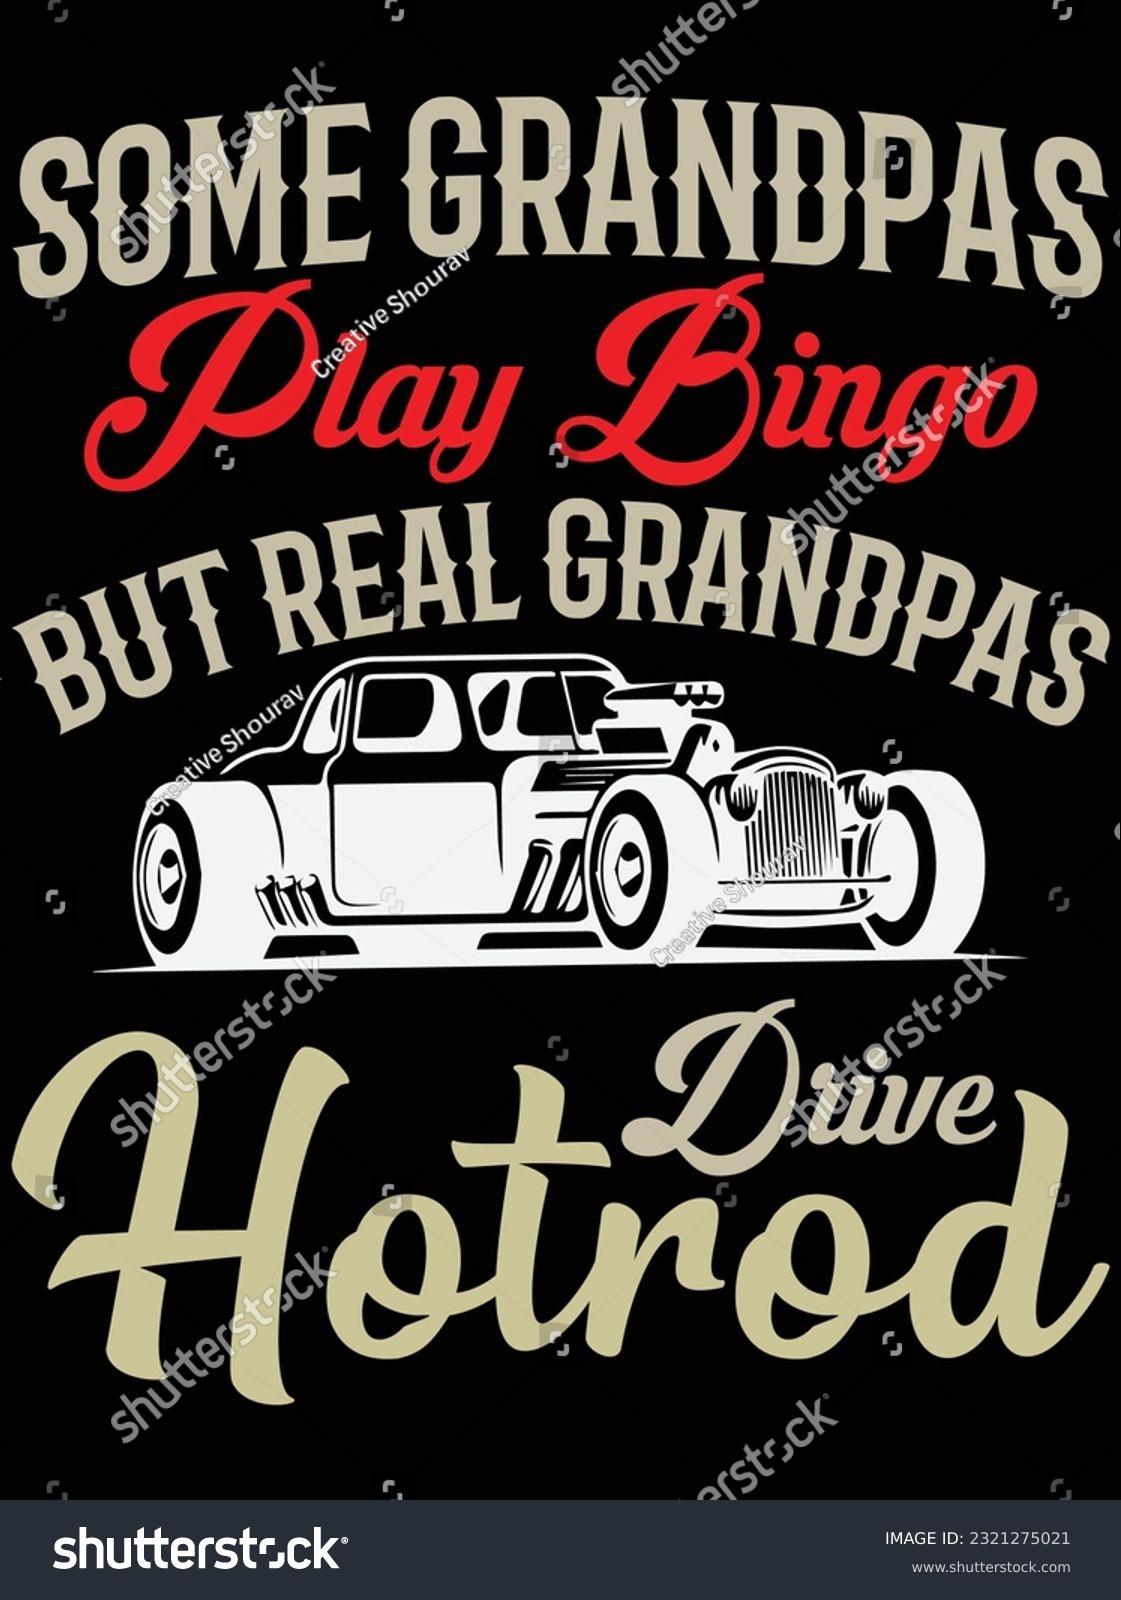 SVG of Some grandpas play bingo but real grandpas vector art design, eps file. design file for t-shirt. SVG, EPS cuttable design file svg